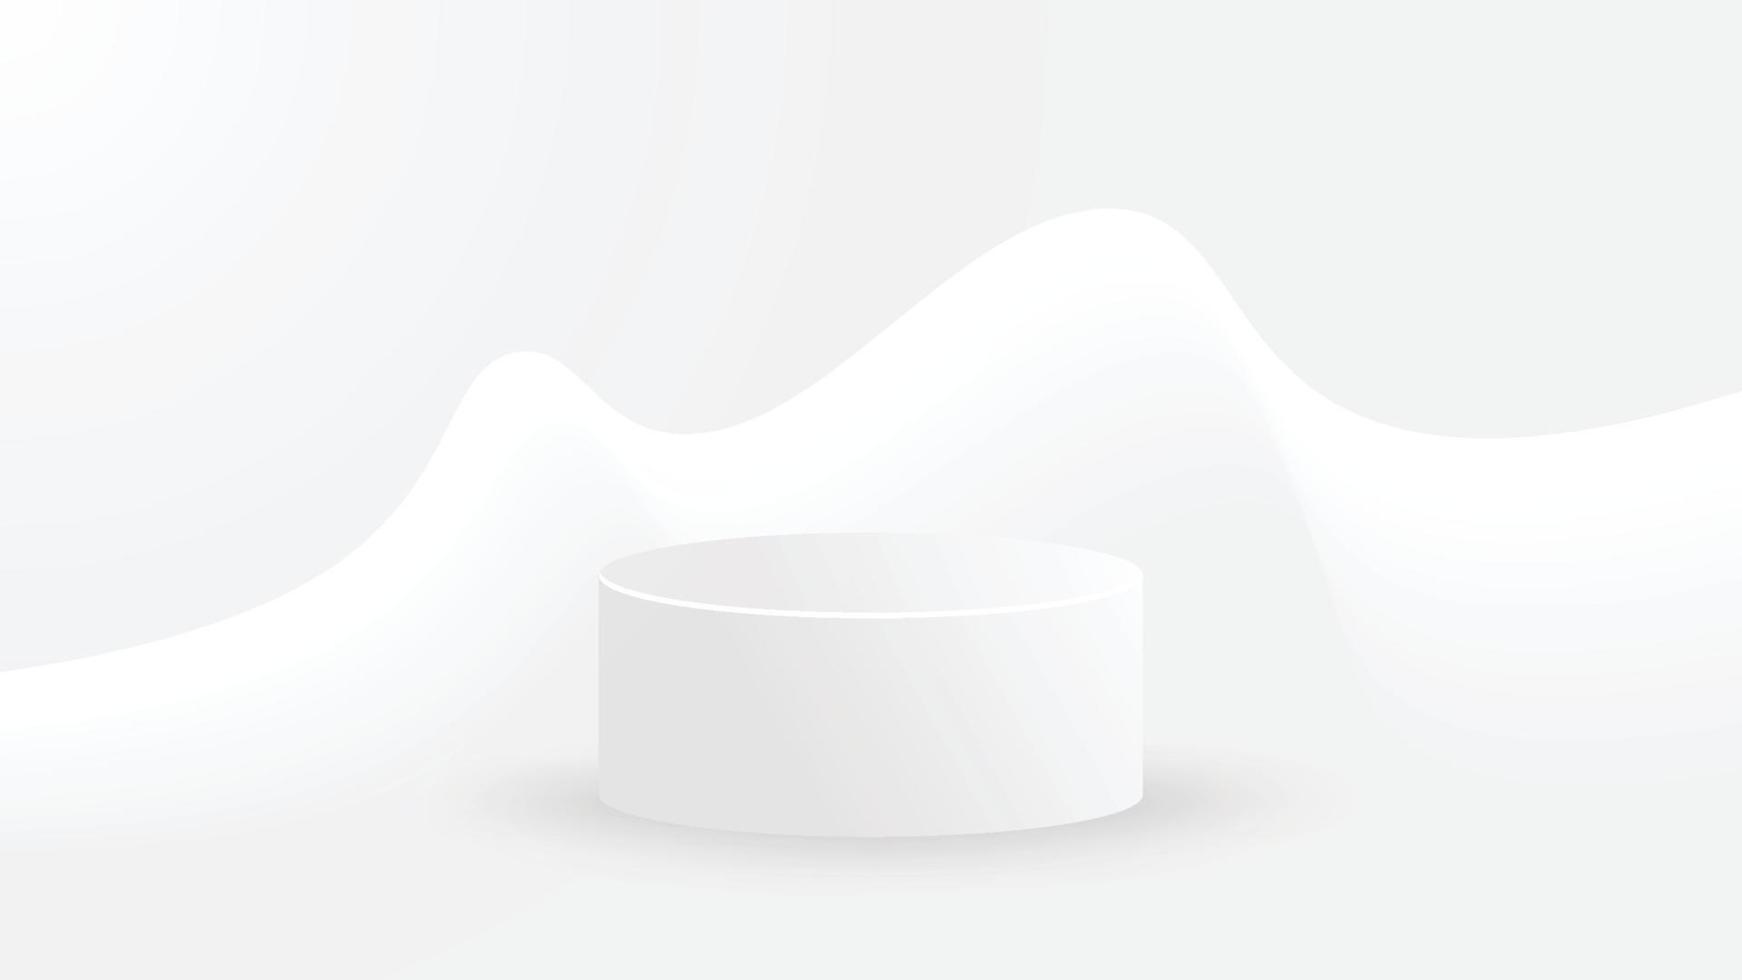 pódio do círculo 3D branco. cilindro realista simulado pódio com decoração de fundo mínima. ilustração vetorial vetor